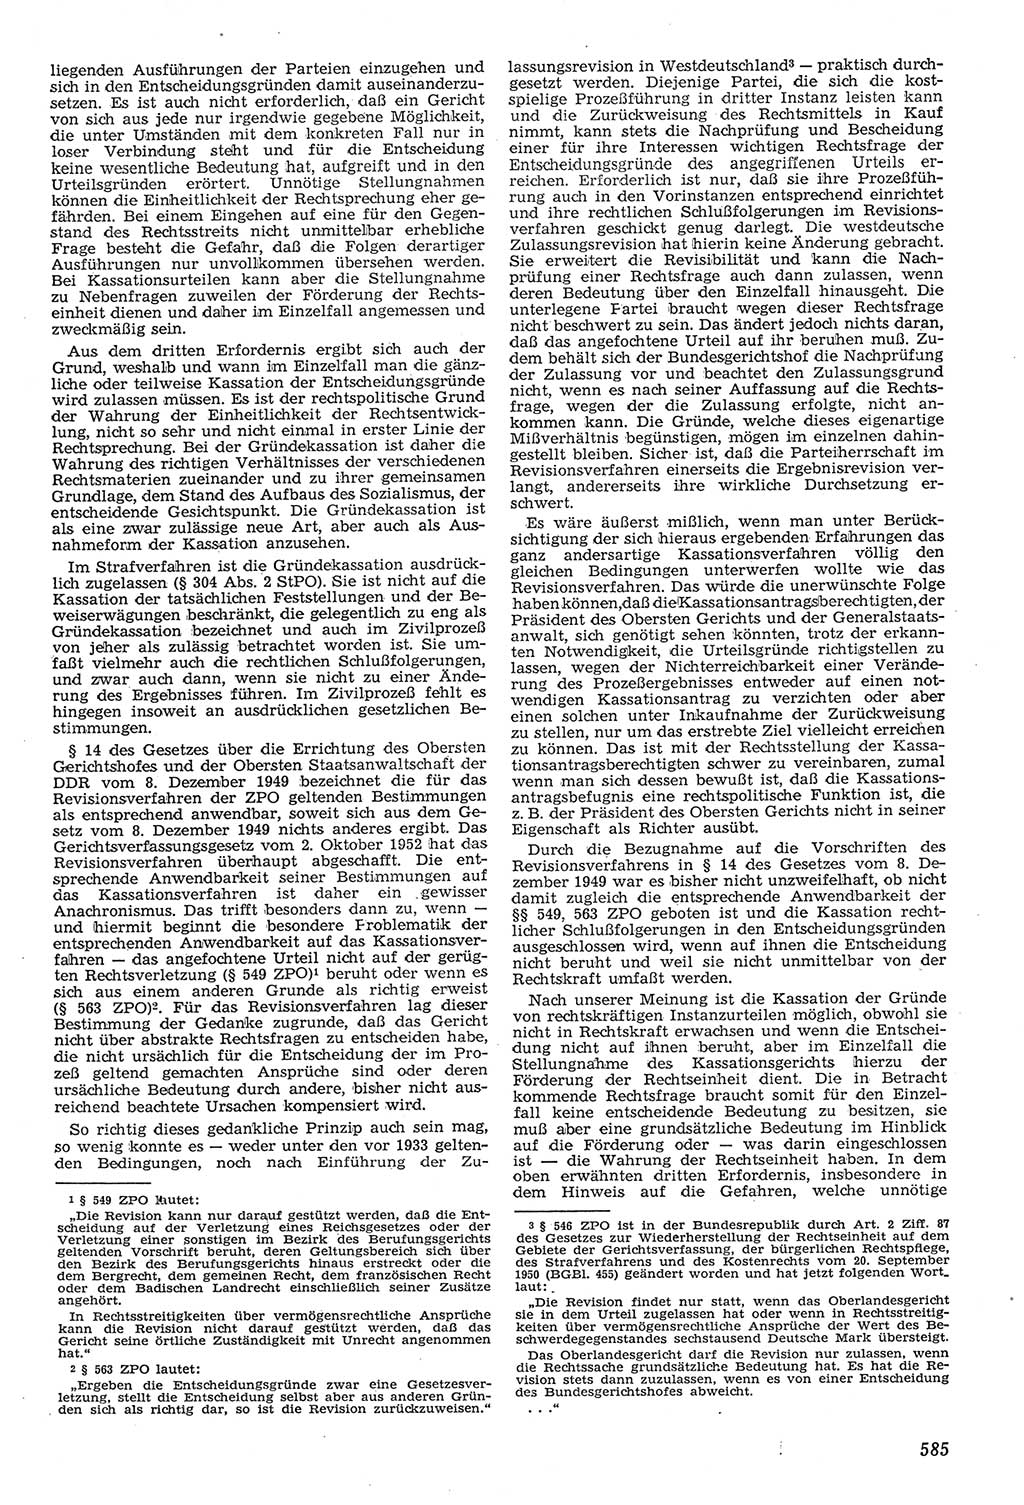 Neue Justiz (NJ), Zeitschrift für Recht und Rechtswissenschaft [Deutsche Demokratische Republik (DDR)], 11. Jahrgang 1957, Seite 585 (NJ DDR 1957, S. 585)